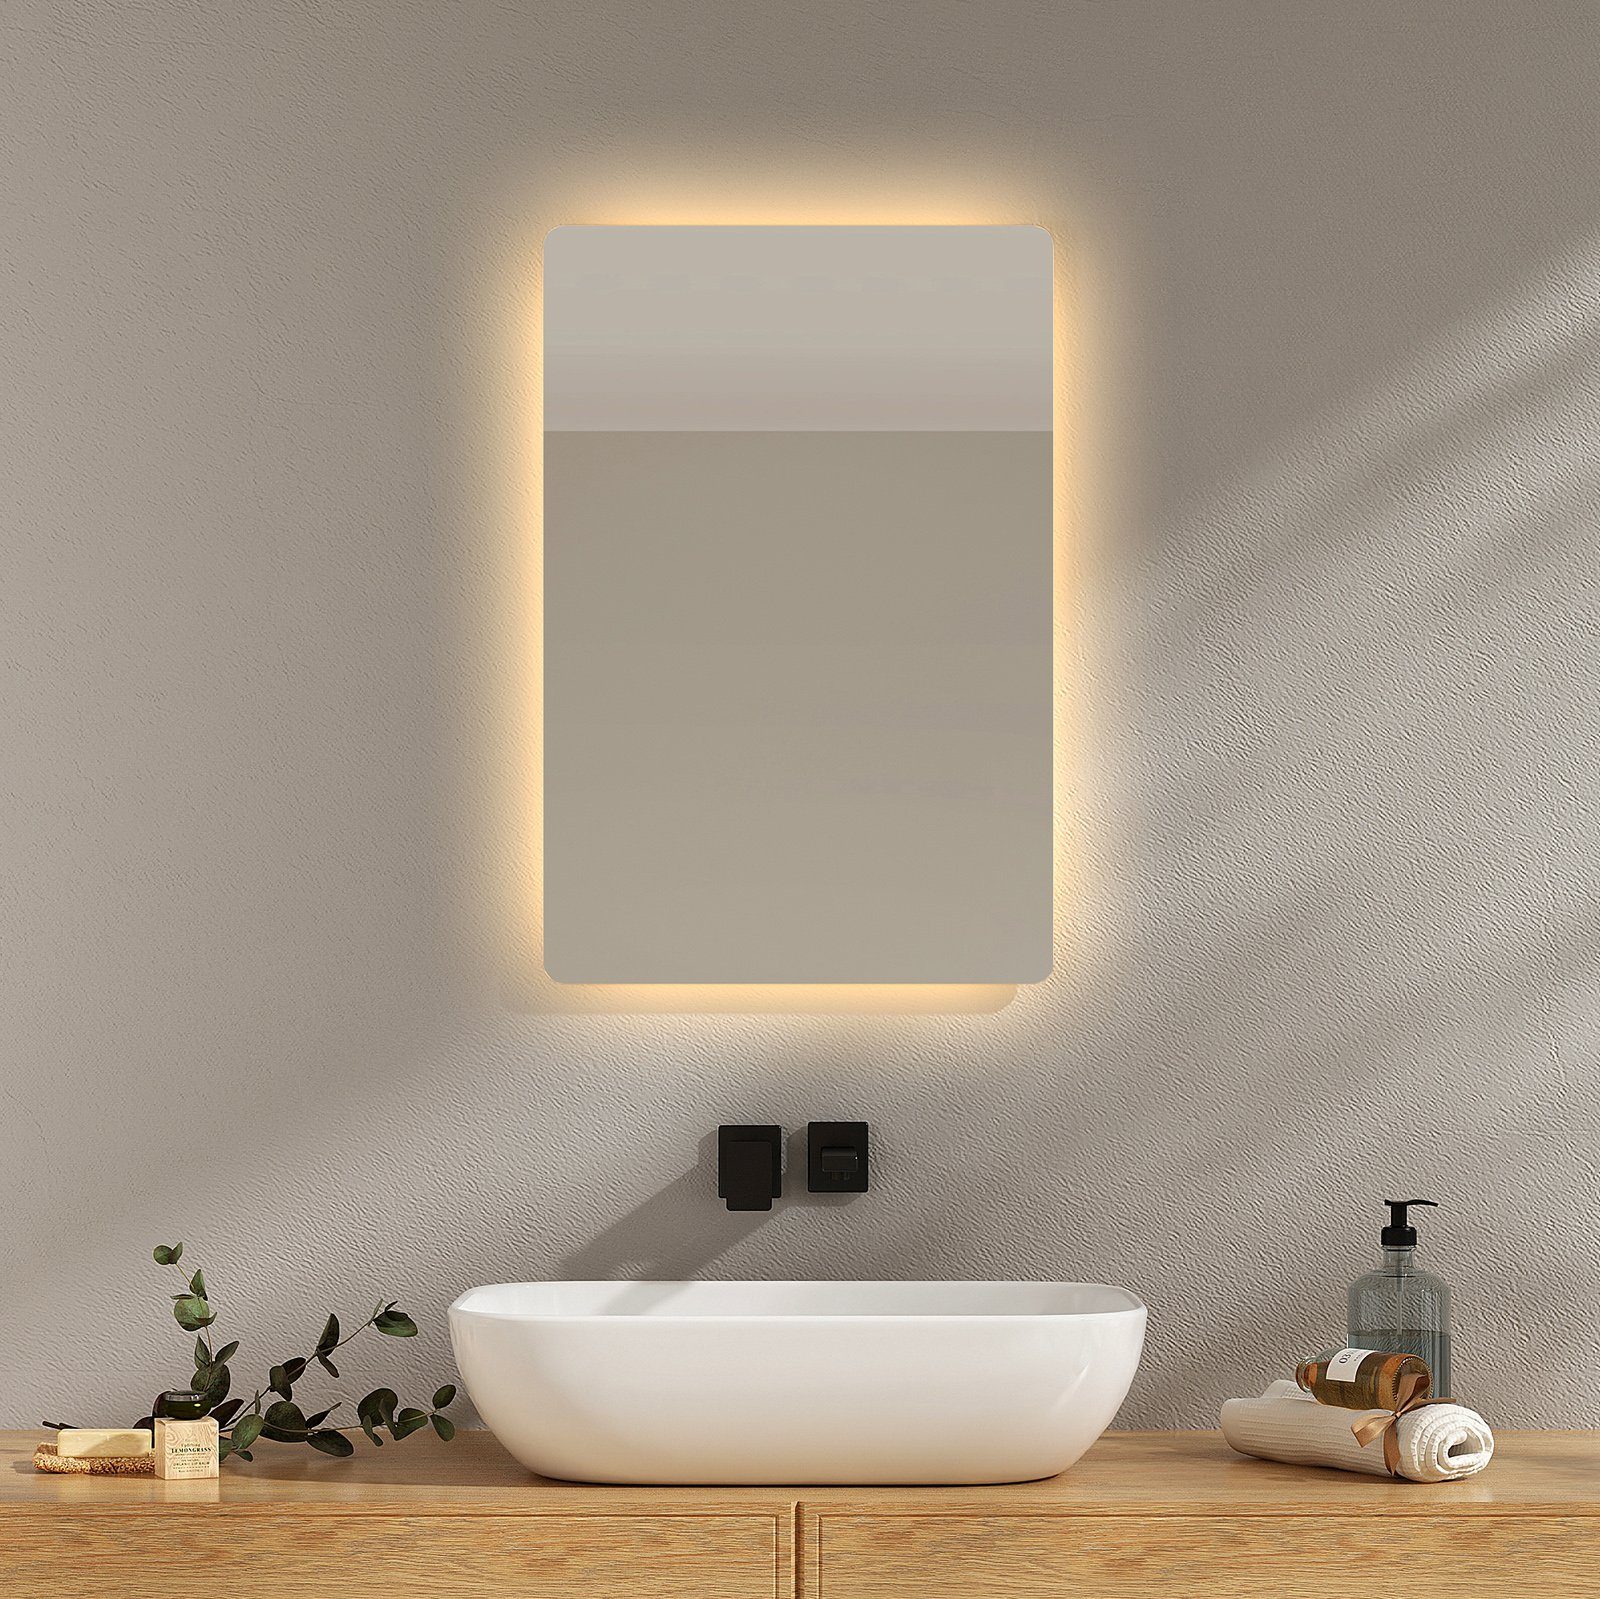 EMKE LED-Lichtspiegel Wandspiegel mit Beleuchtung Warmweiß/Kaltweiß, Klein 2 Badspiegel mit Knopfschalter, Lichtfarbe LED IP44 Beschlagfrei